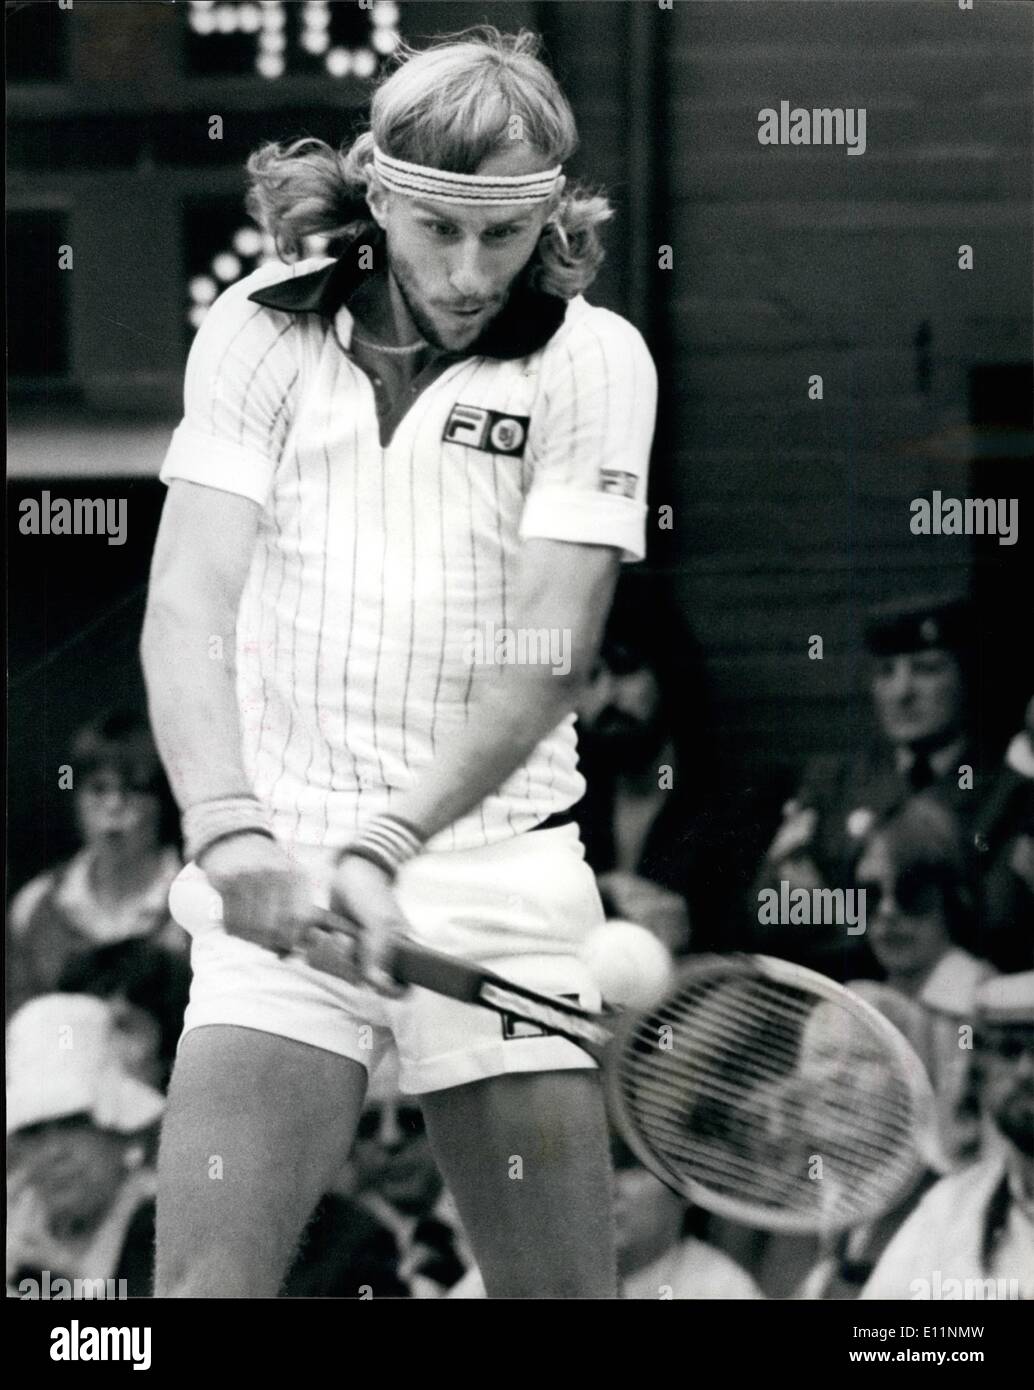 7. Juli 1979 - Björn Borg gewinnt seinen vierten aufeinanderfolgenden Wimbledon-Titel gegen Roscoe Tanner In fünf Sätzen; Heute von dem Centre Court in Wimbledon Bjorn Borg von Schweden gewann das Herren-Einzel-Titel zum vierten sukzessive Mal wenn er den amerikanischen Roscoe Tanner in fünf Sätzen verloren. Foto zeigt Björn Borg in Aktion gegen Roscoe Tanner am Centrecourt gesehen. Stockfoto